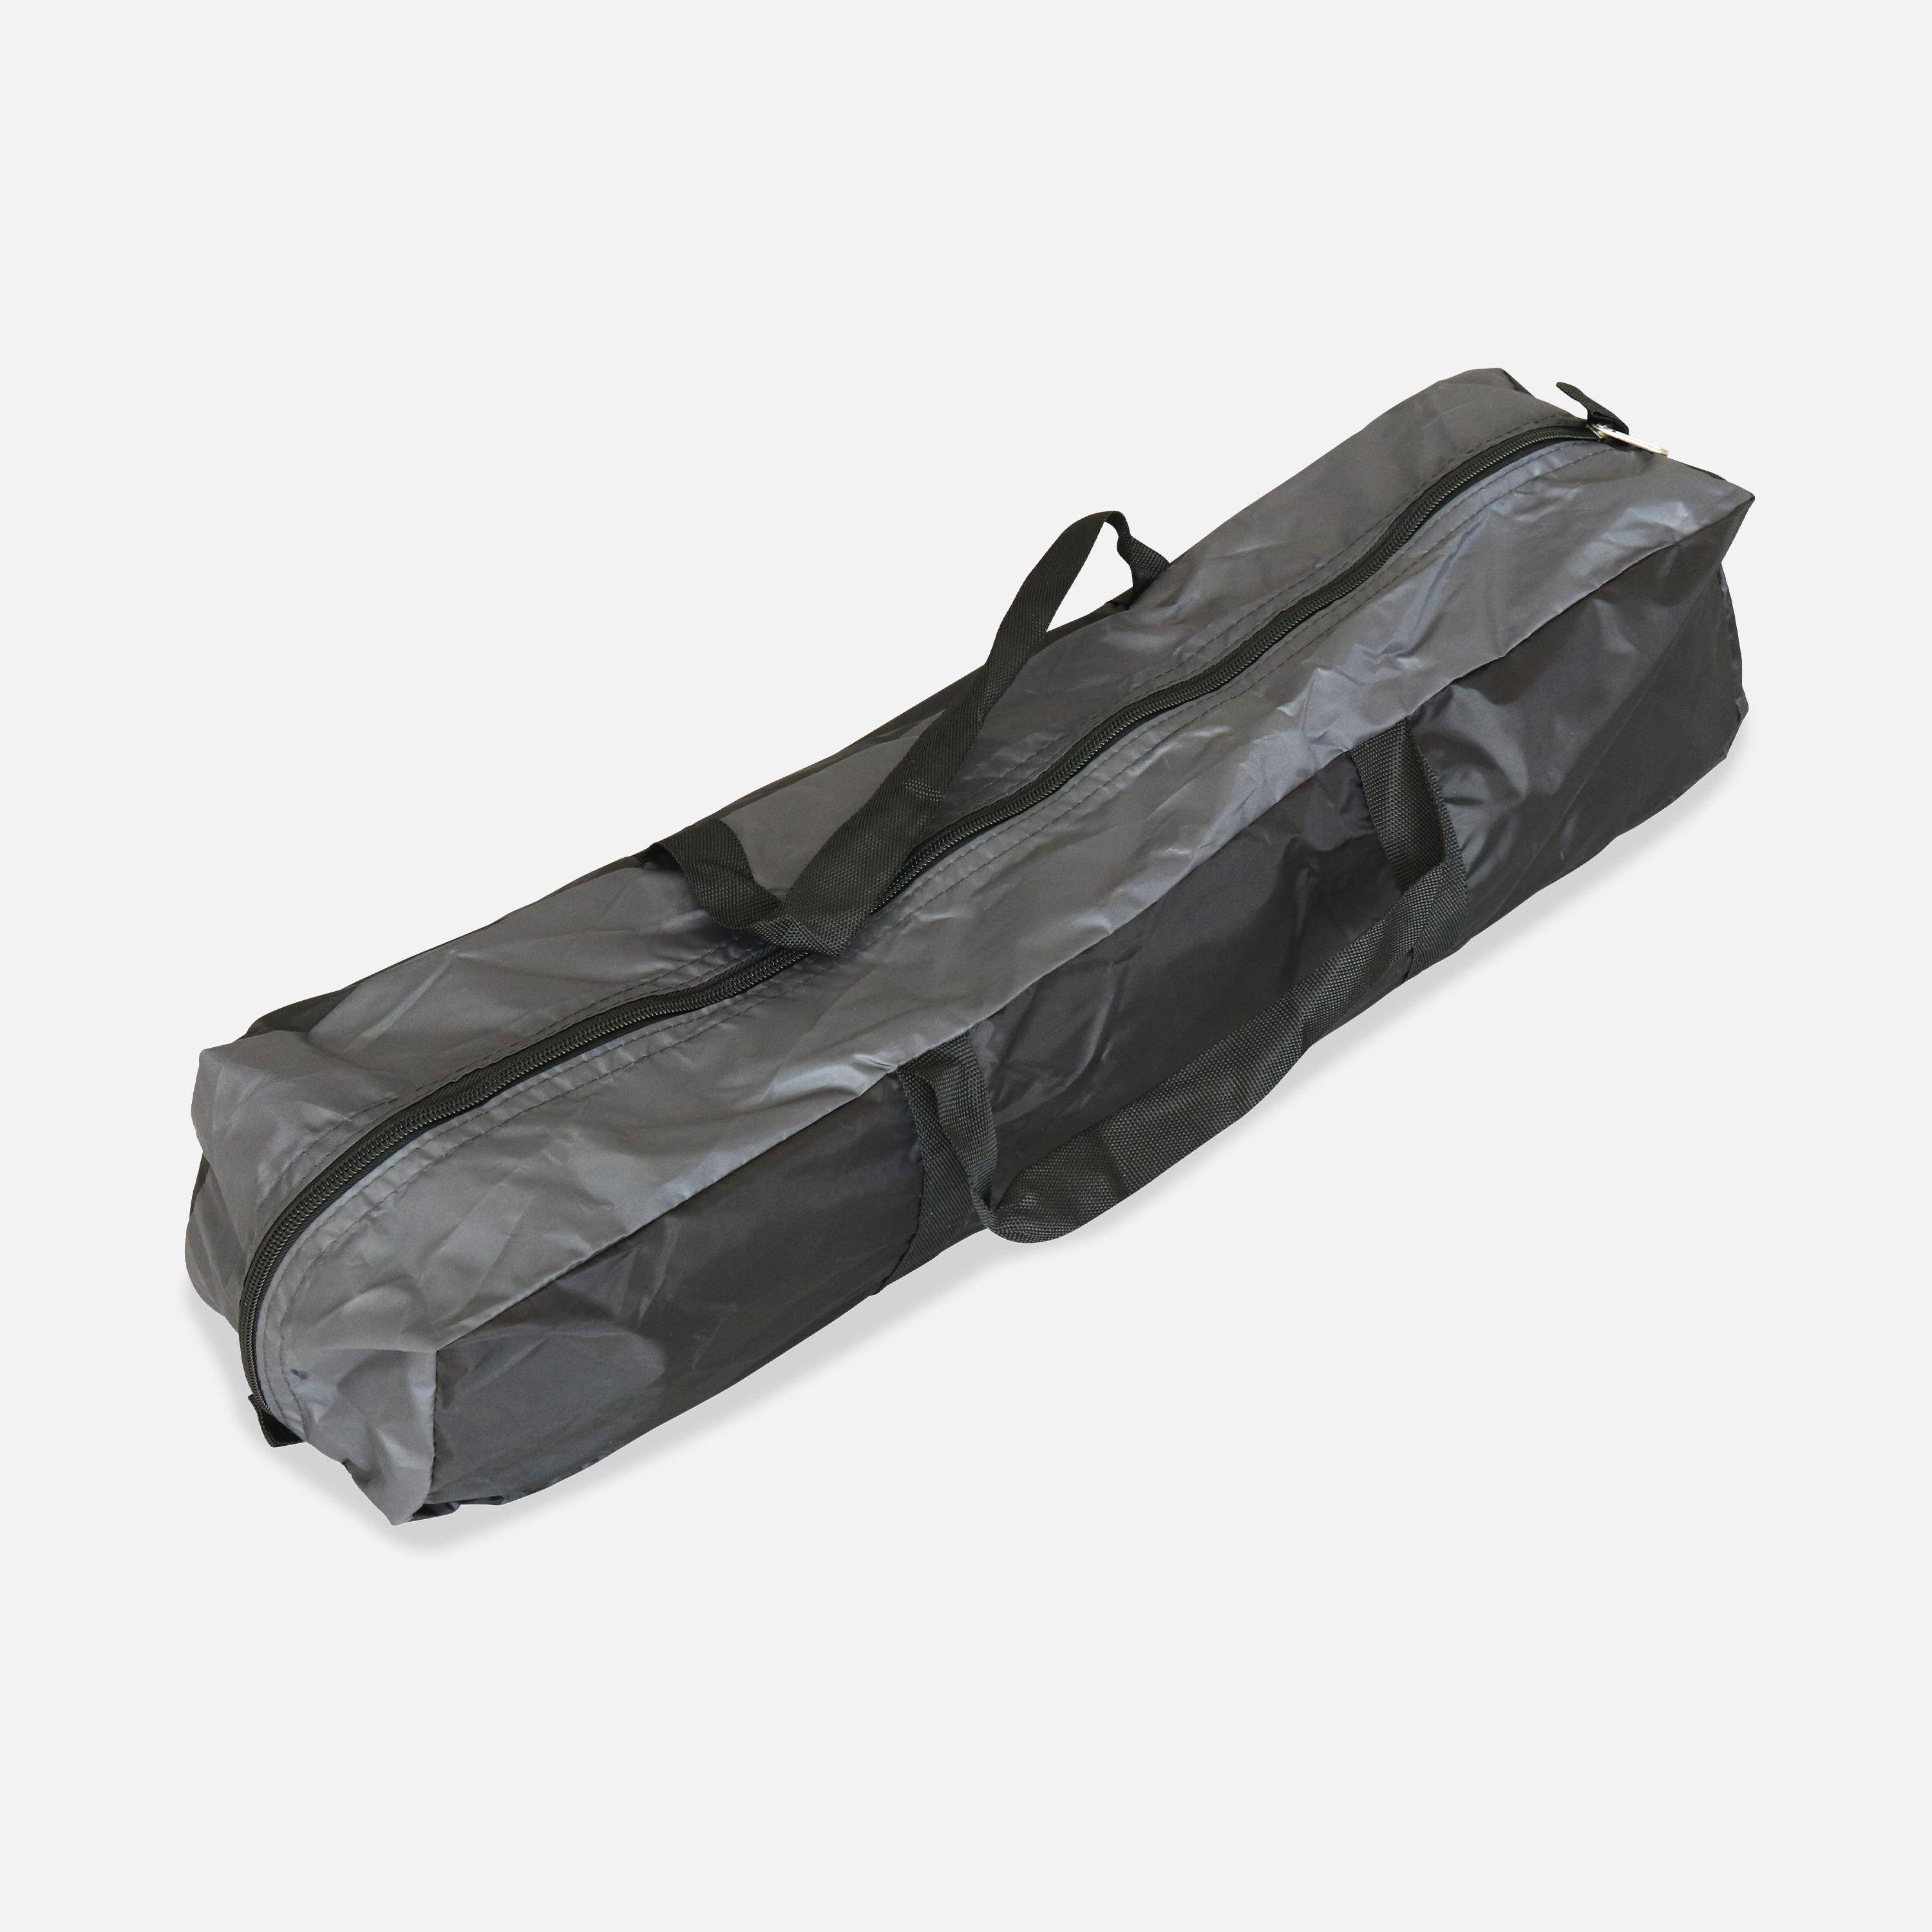 Trampoline 430cm gris avec pack d'accessoires + Tente de camping avec sac de transport,sweeek,Photo8